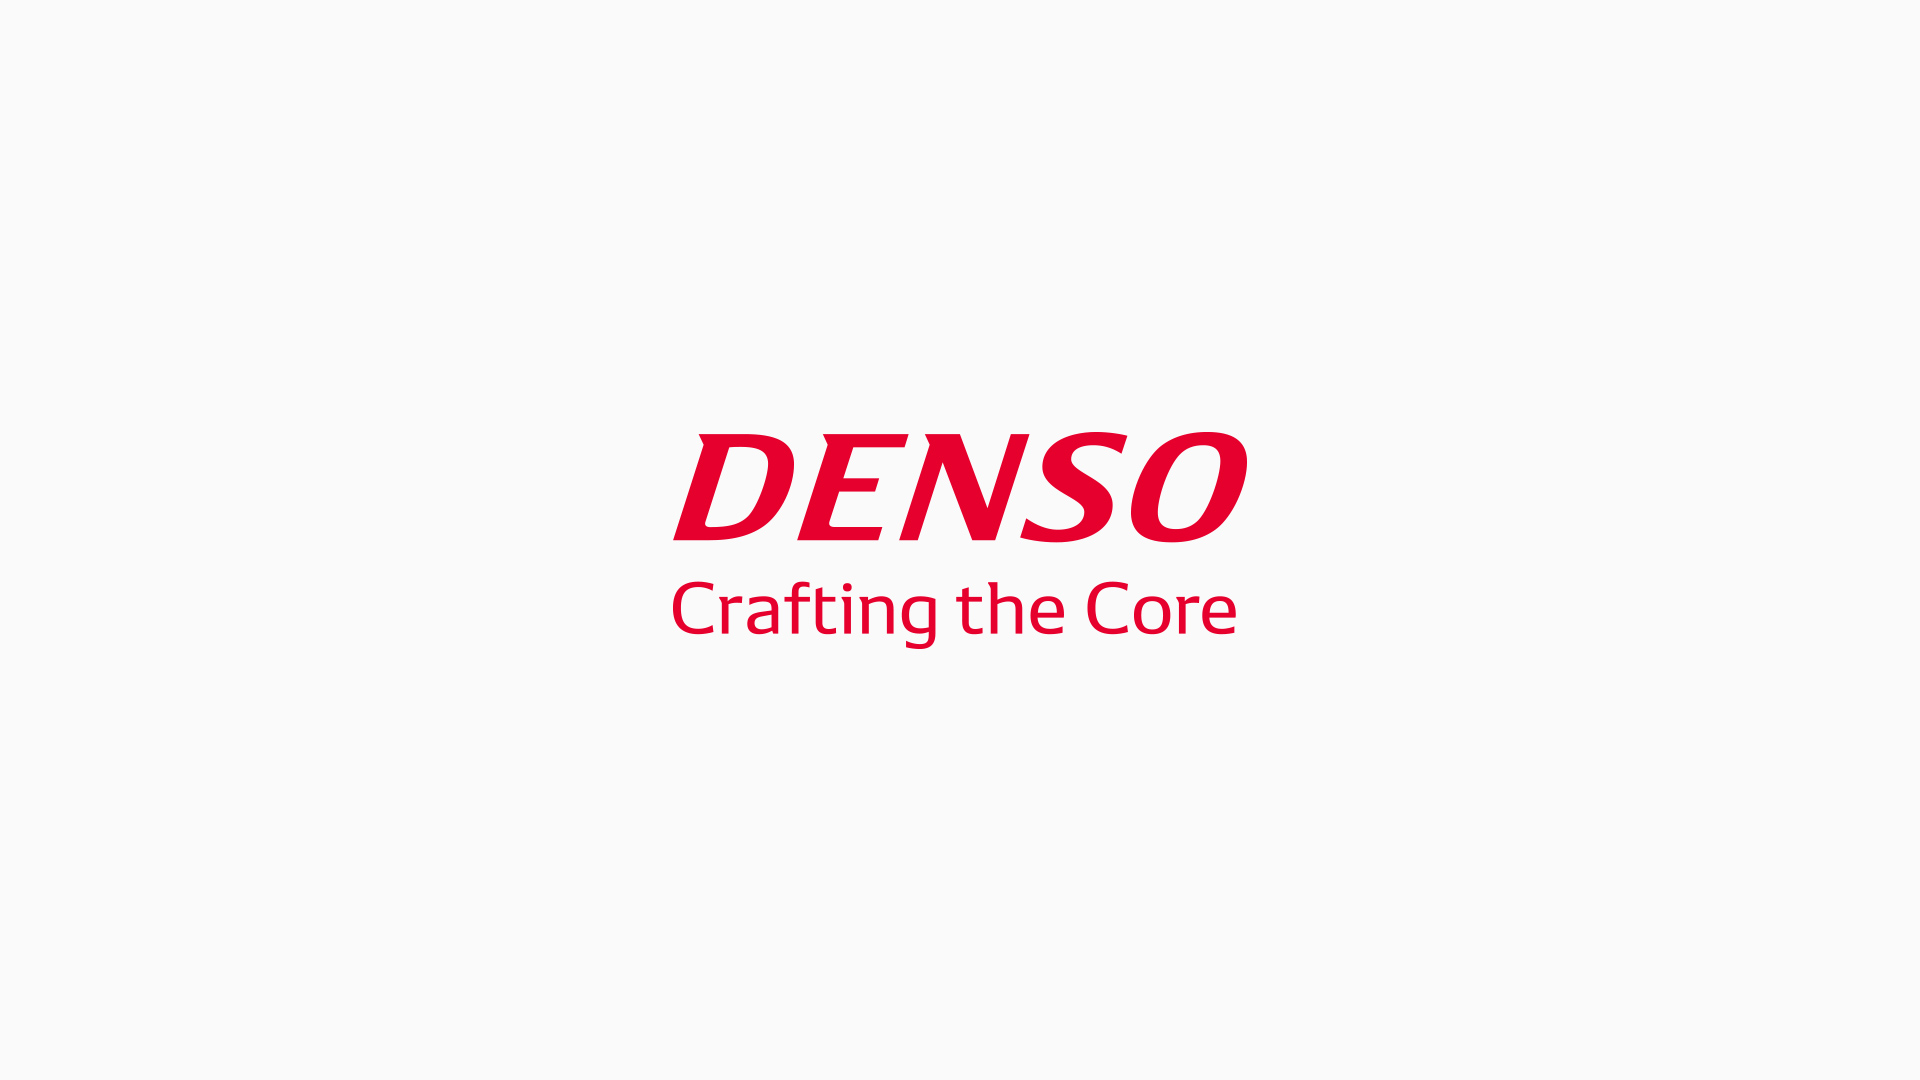 www.denso.com